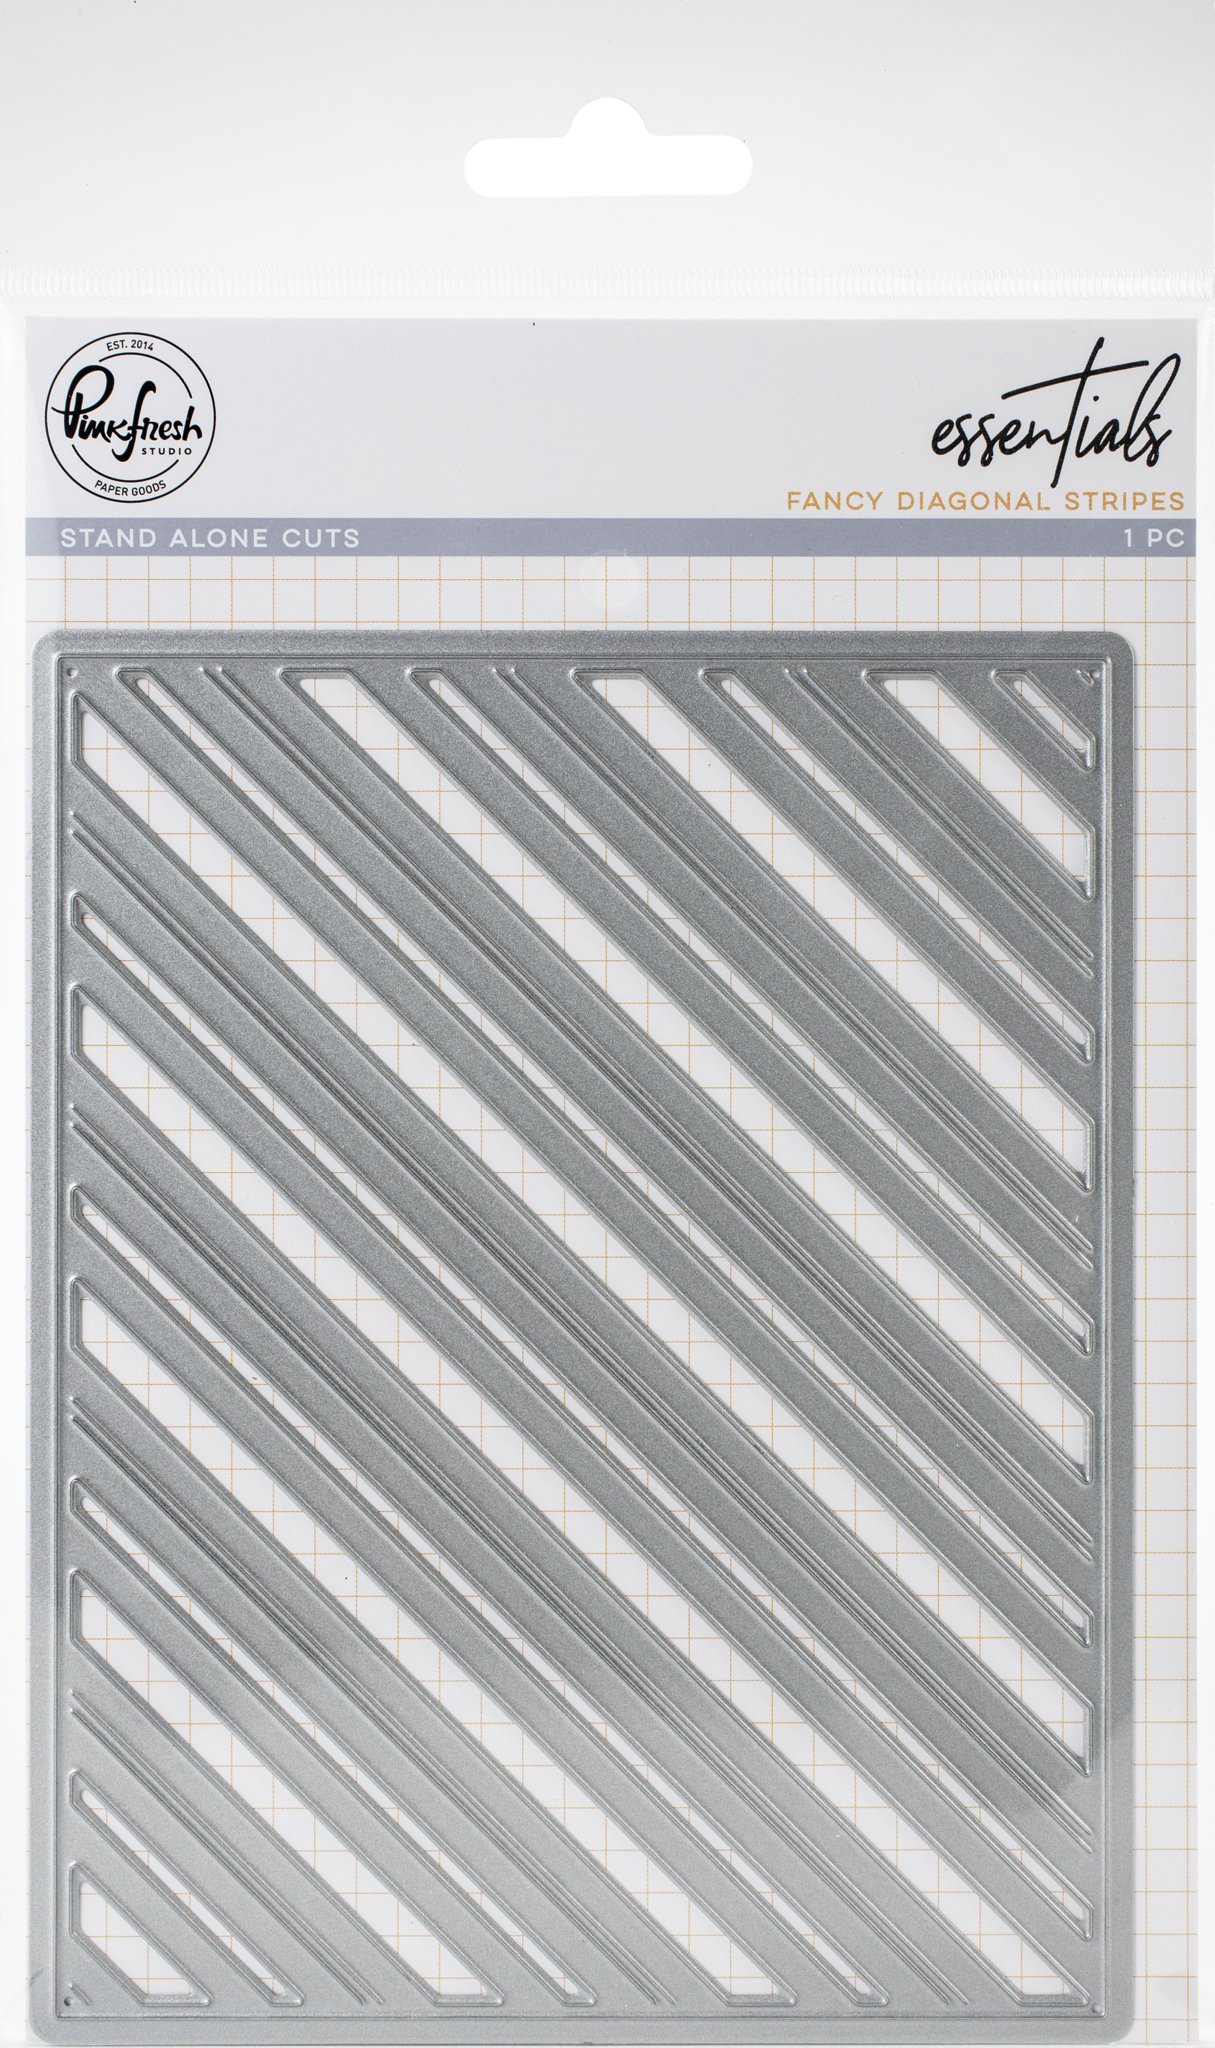 Bild von Pinkfresh Studio Essentials Die-Fancy Diagonal Stripes